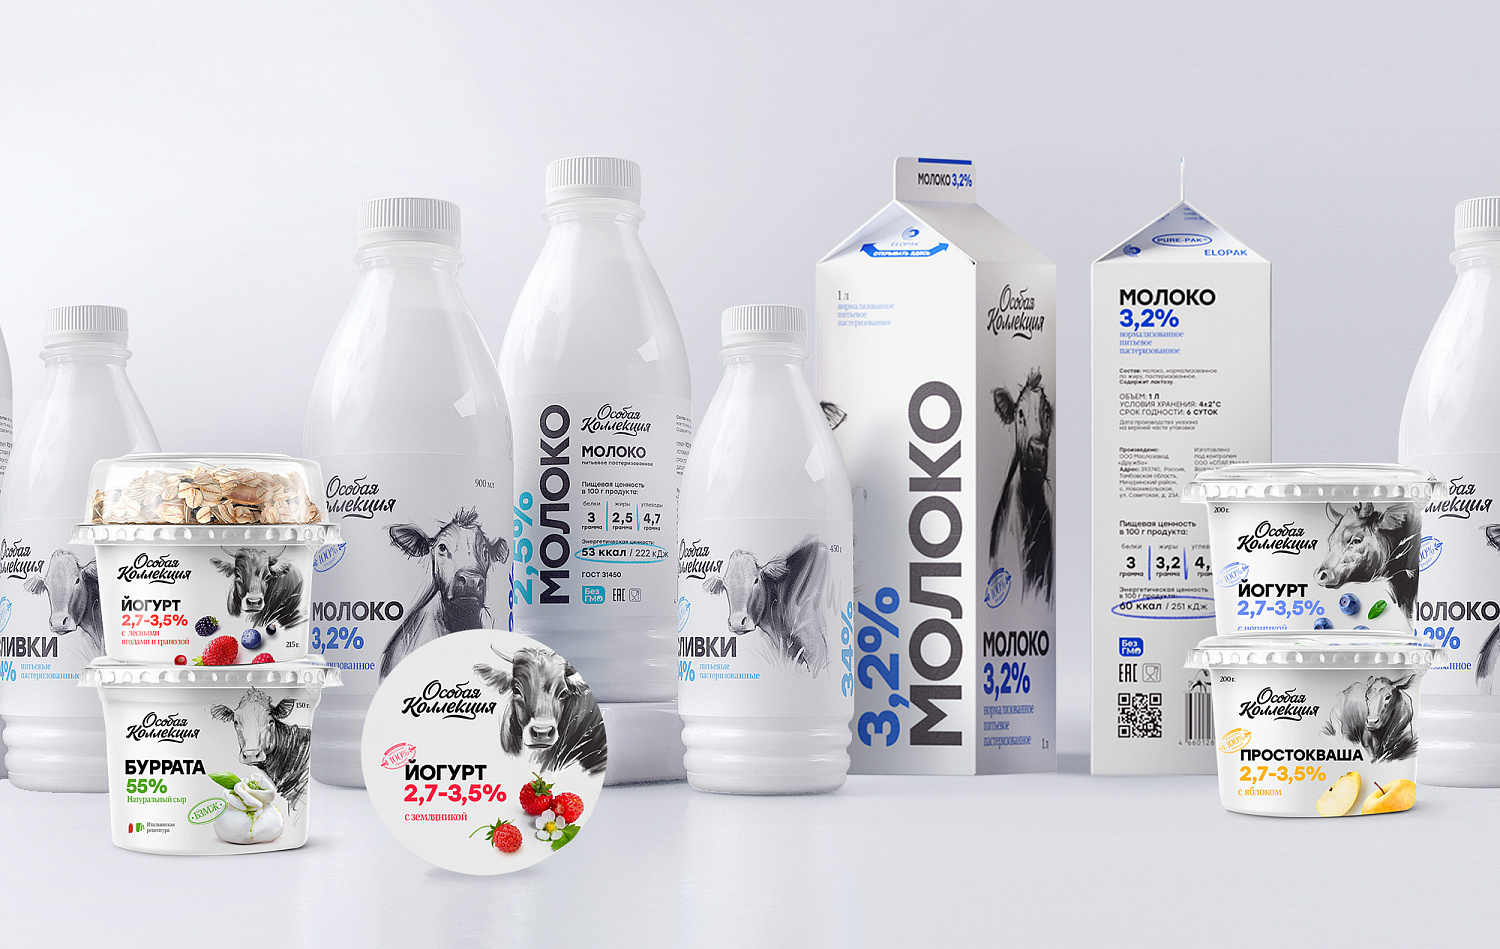 Особая молочная коллекция: дизайн упаковки СТМ Spar - Портфолио Depot